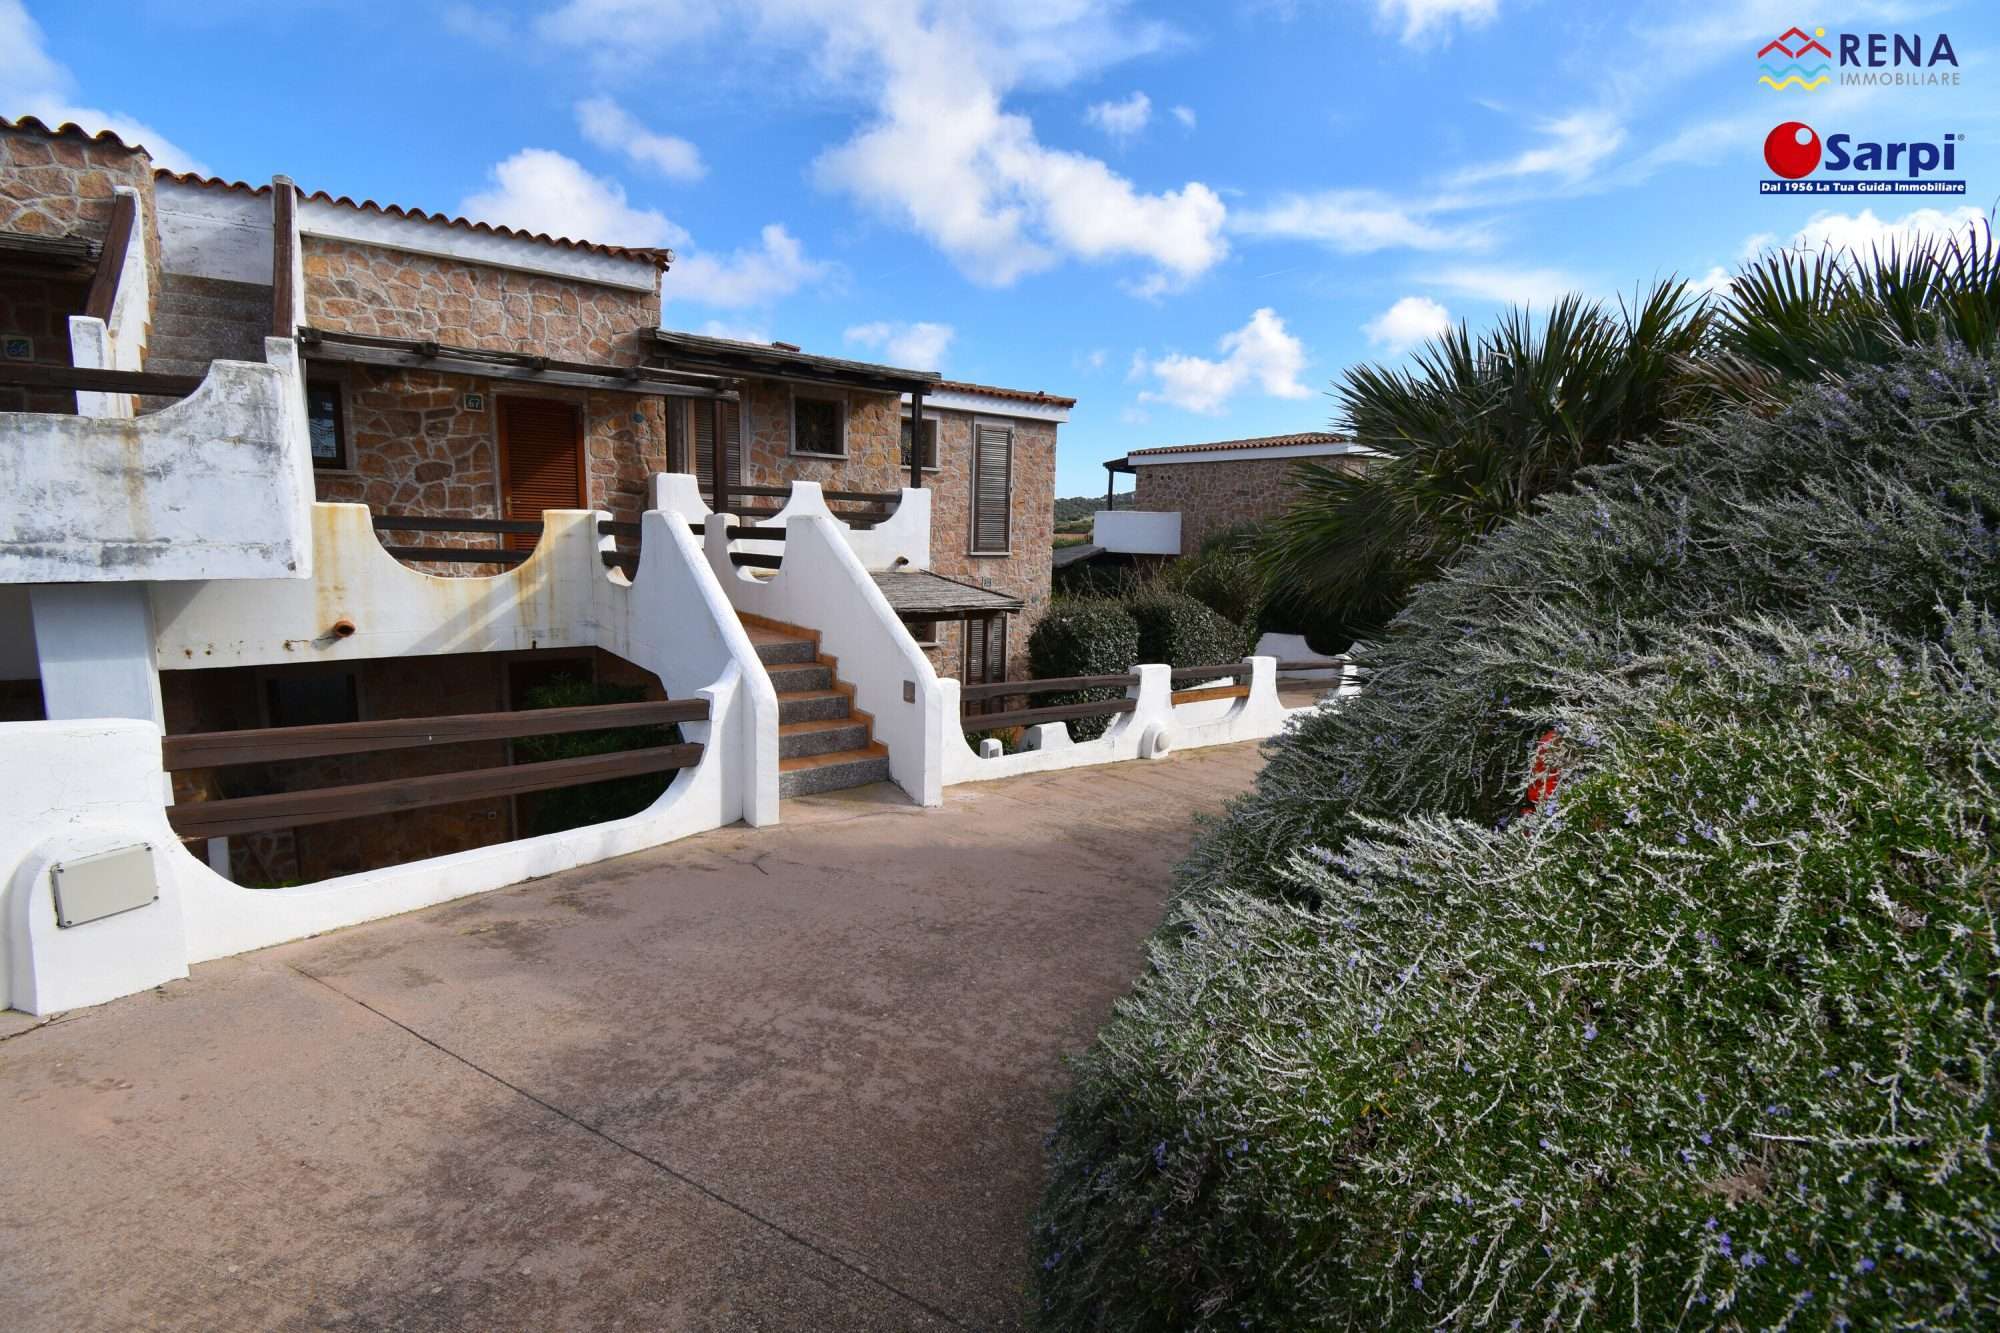 Bilocale a due passi dal mare in residence con piscina – Santa Teresa Gallura